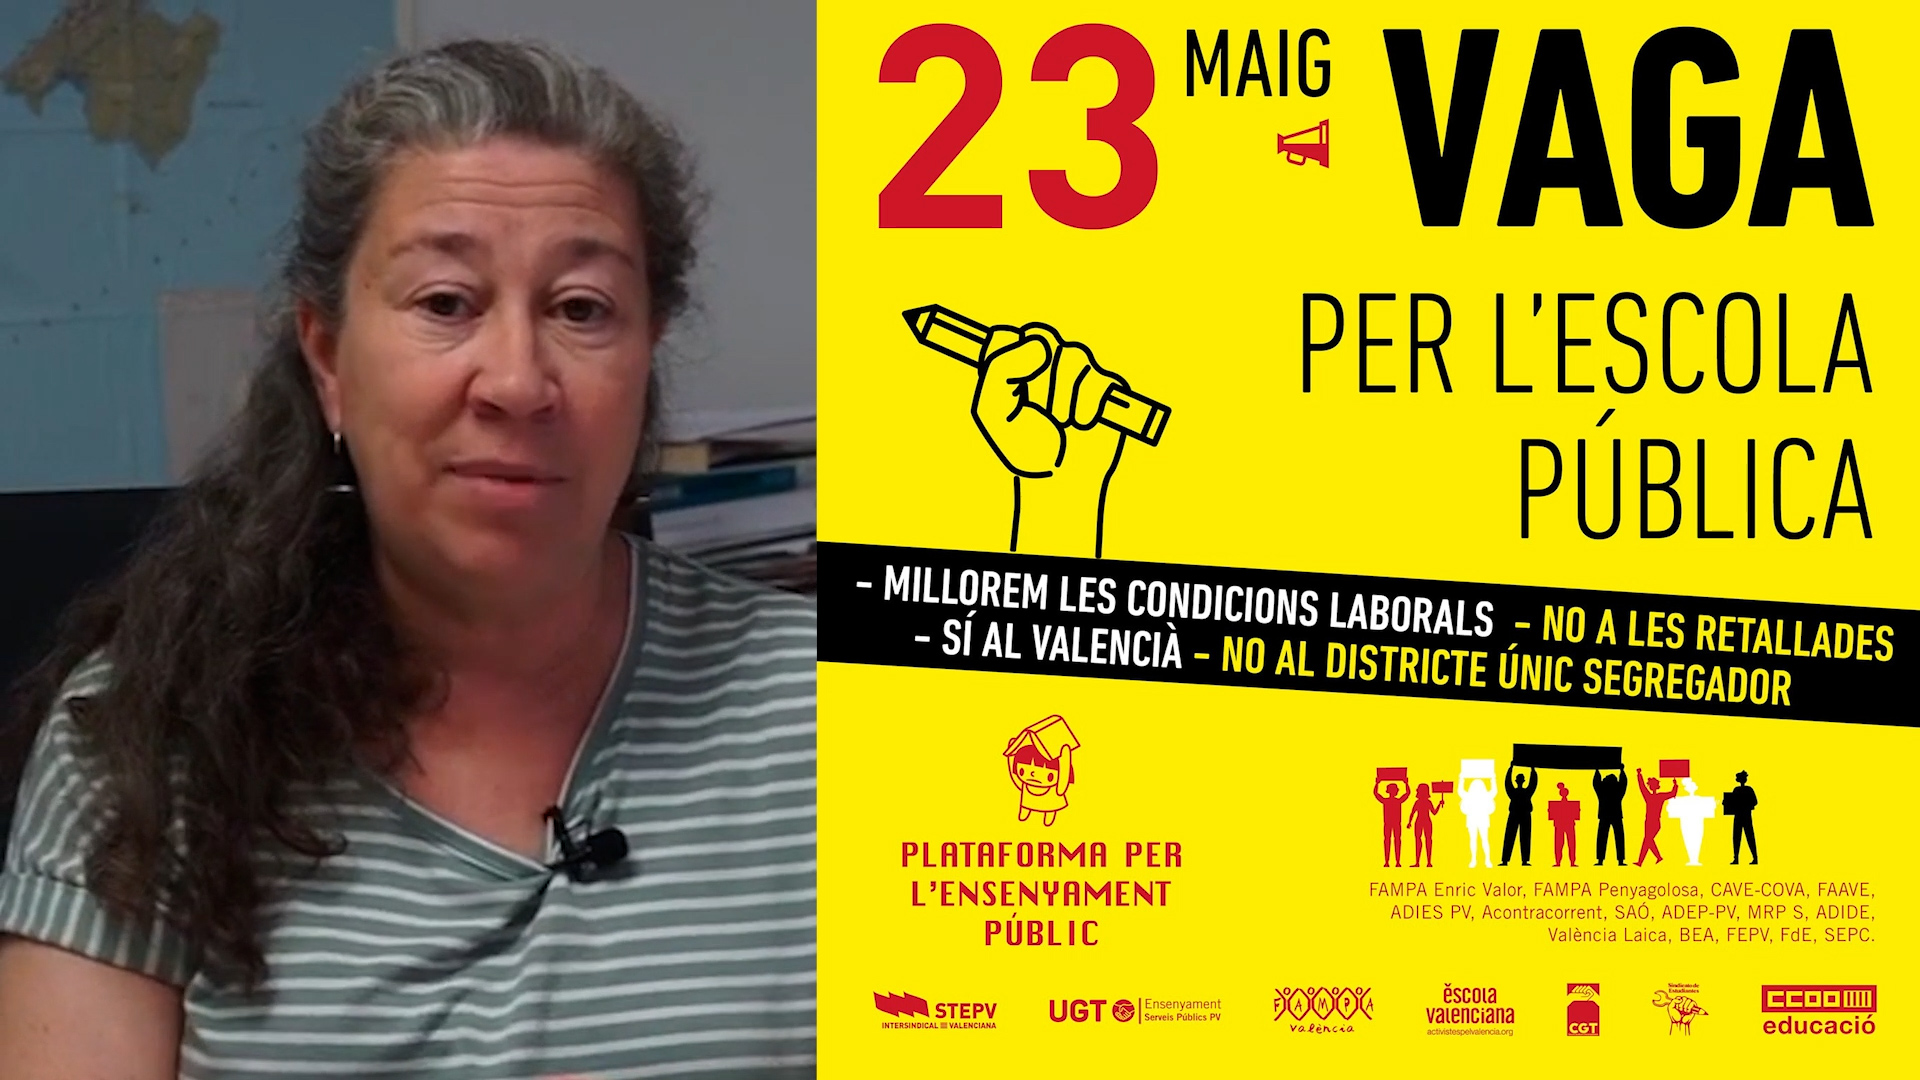 La Intersindical Catalana dona suport a la vaga del 23 de maig